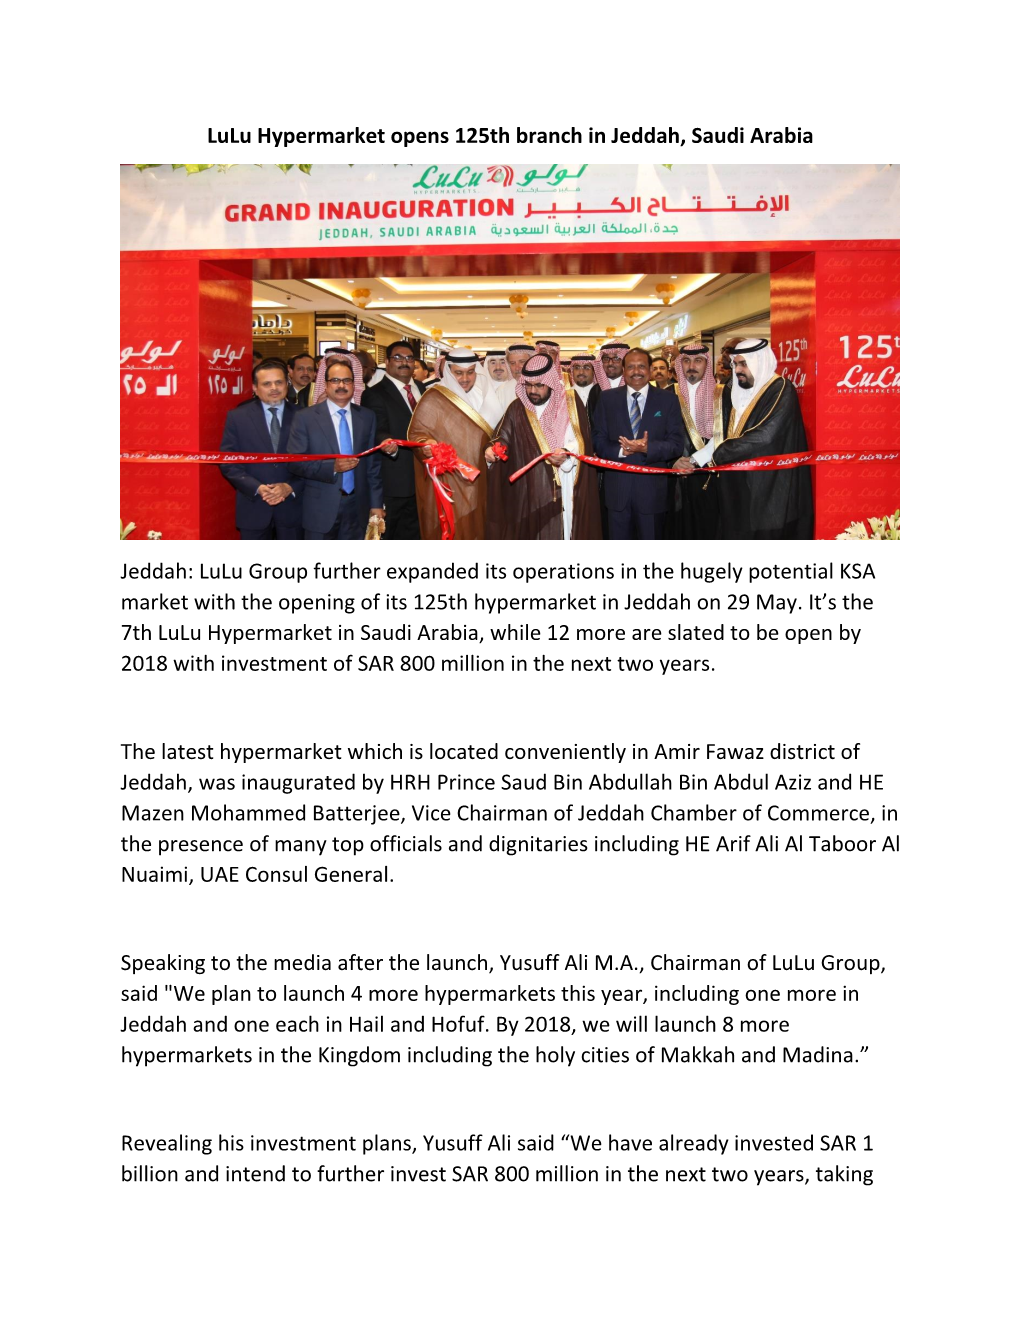 Lulu Hypermarket Opens 125Th Branch in Jeddah, Saudi Arabia